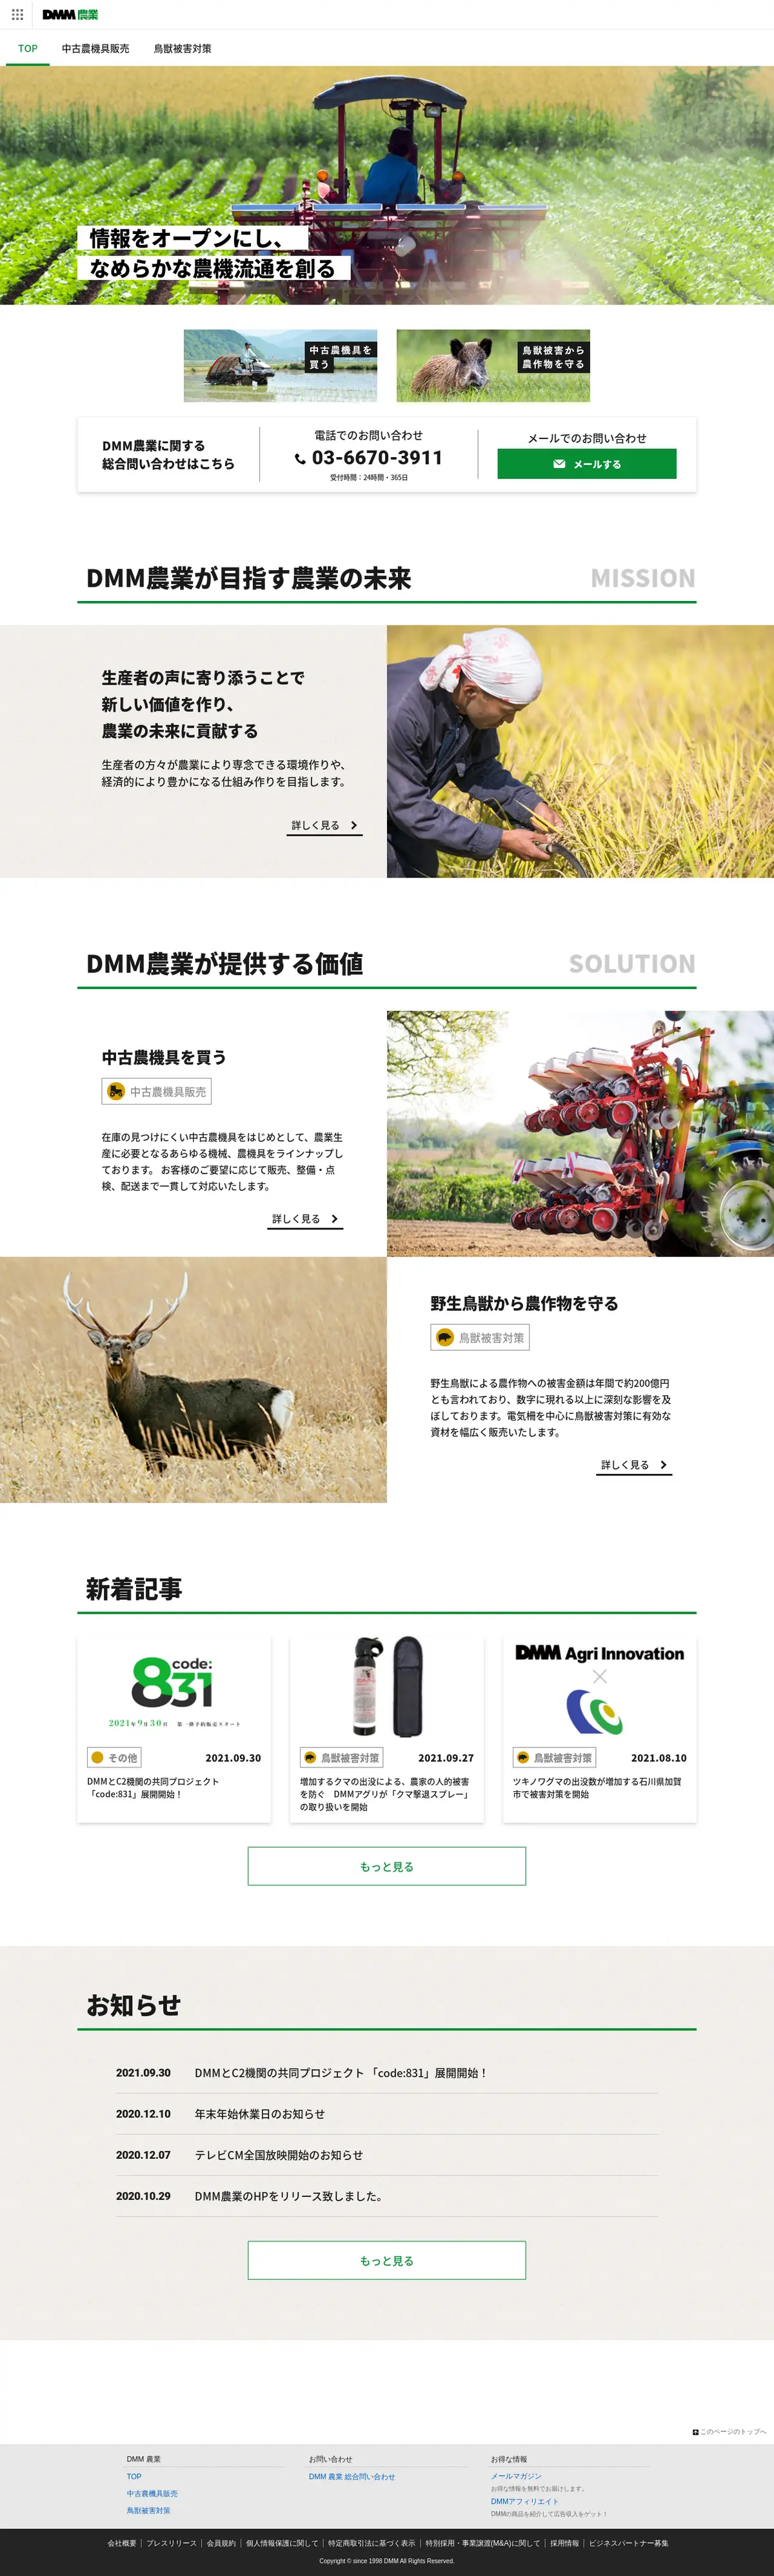 キャプチャ画面 会社名:DMM.com Groupプロジェクト名:DMM 農業 画面名:全国トップ デバイス名:PCカテゴリ:農林水産タグ:全国トップ